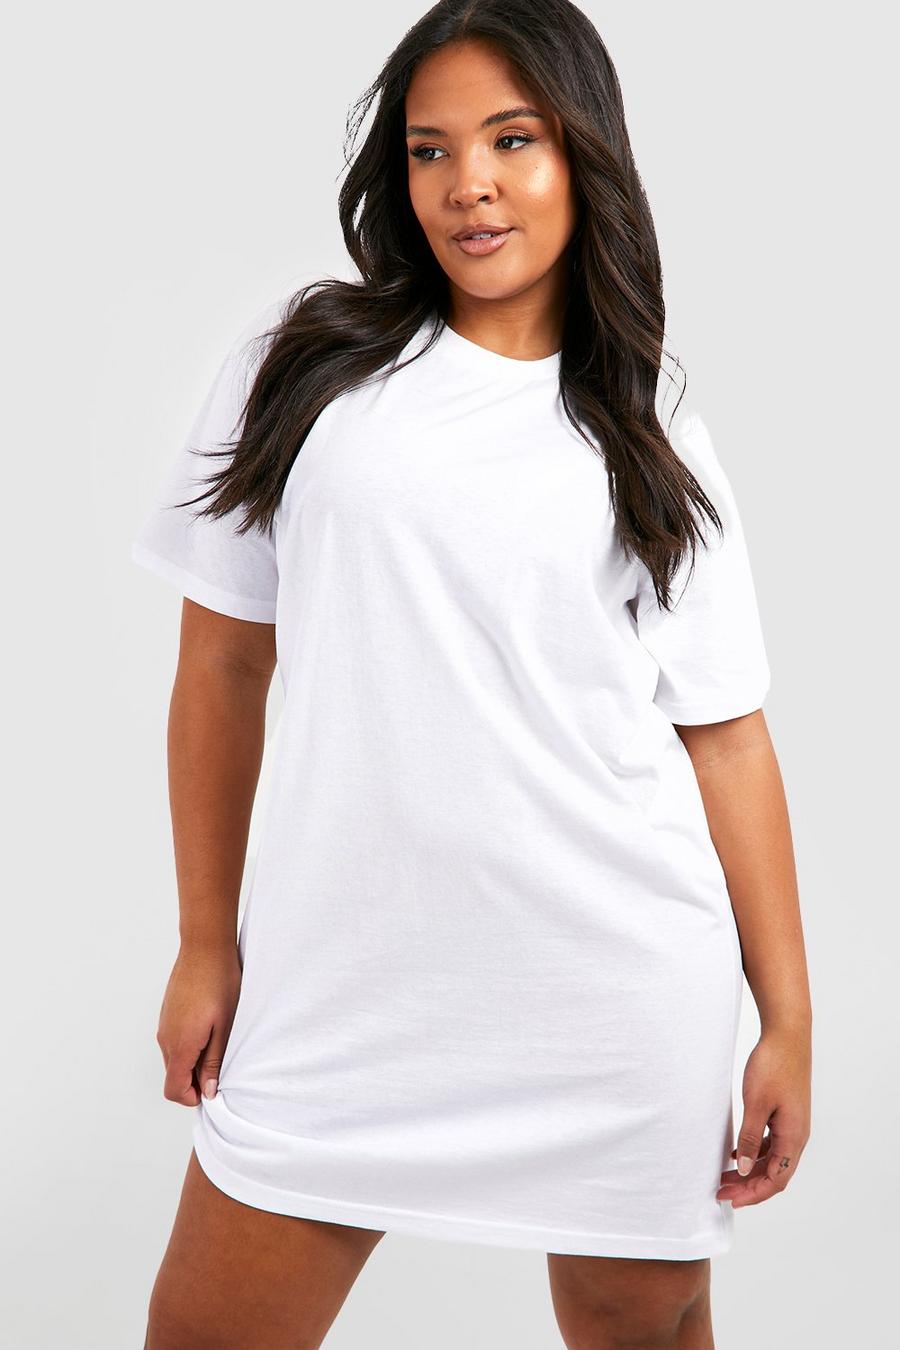 T-Shirt Sport Femme Grande Taille Long Tee-Shirt Femme